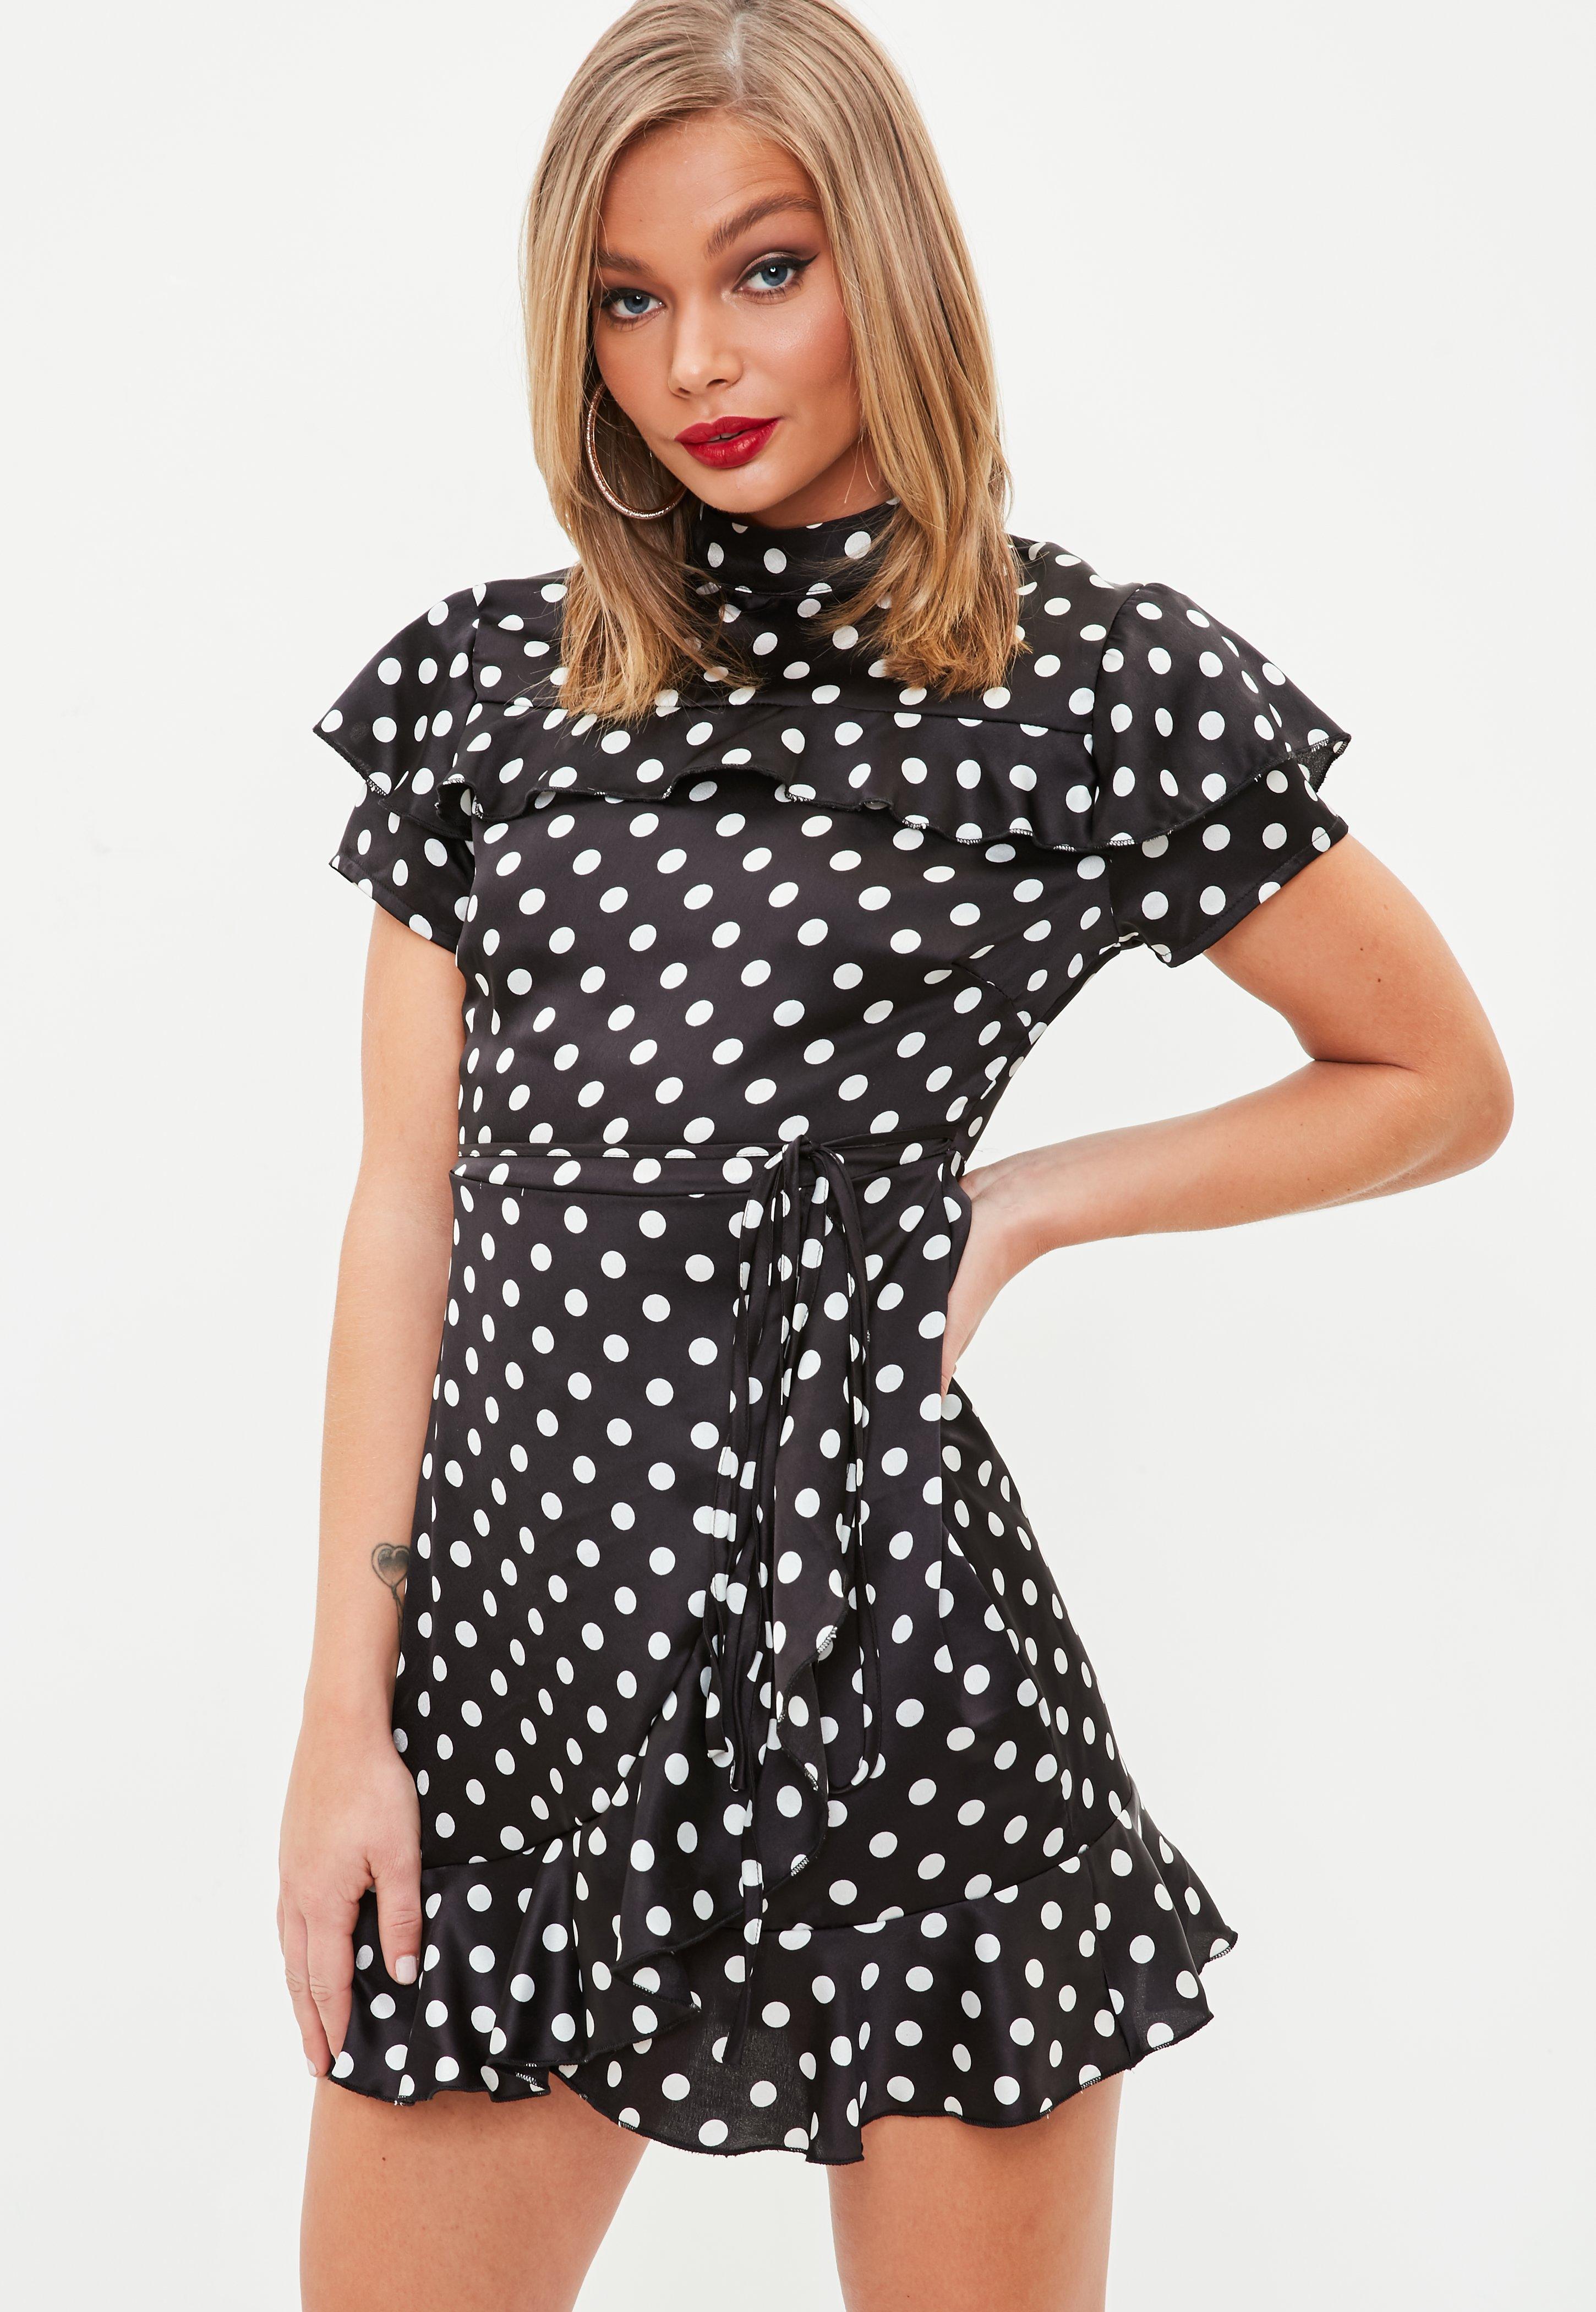 Black dress polka dots